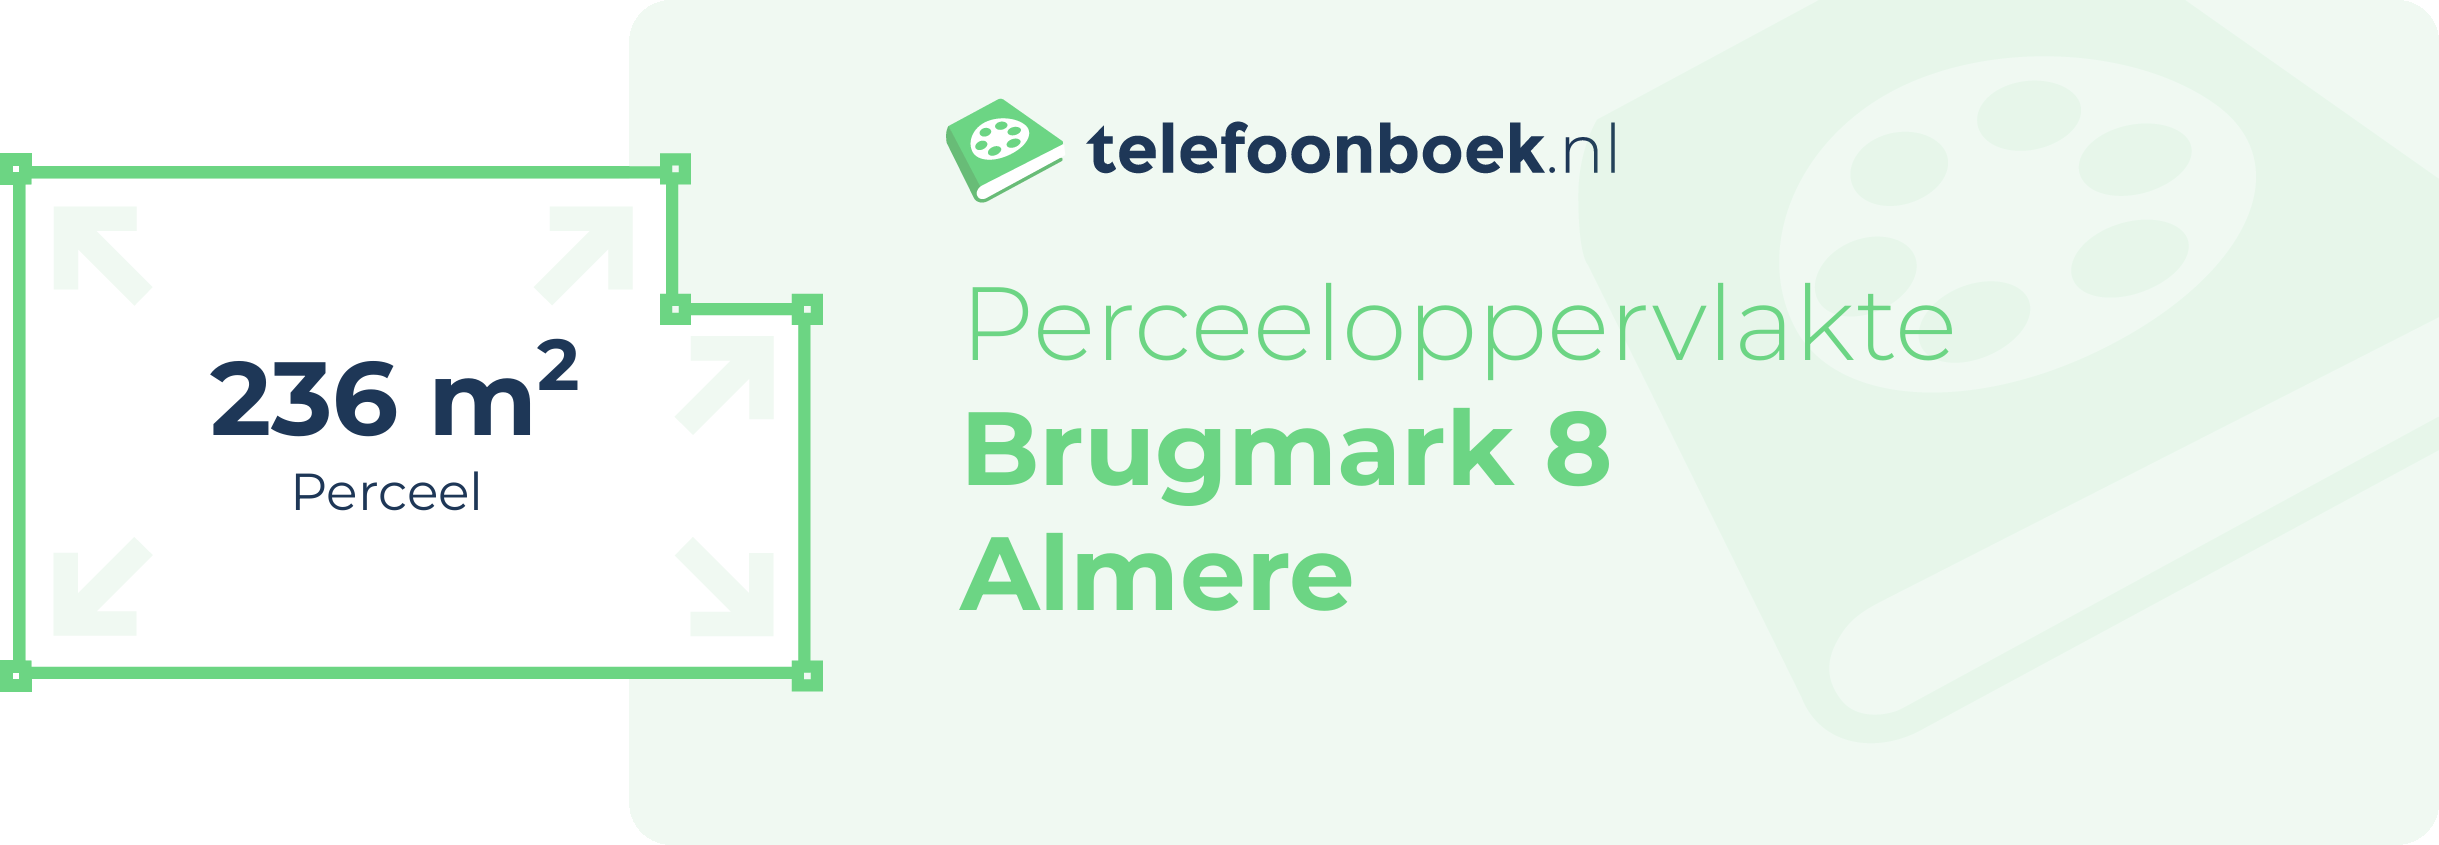 Perceeloppervlakte Brugmark 8 Almere